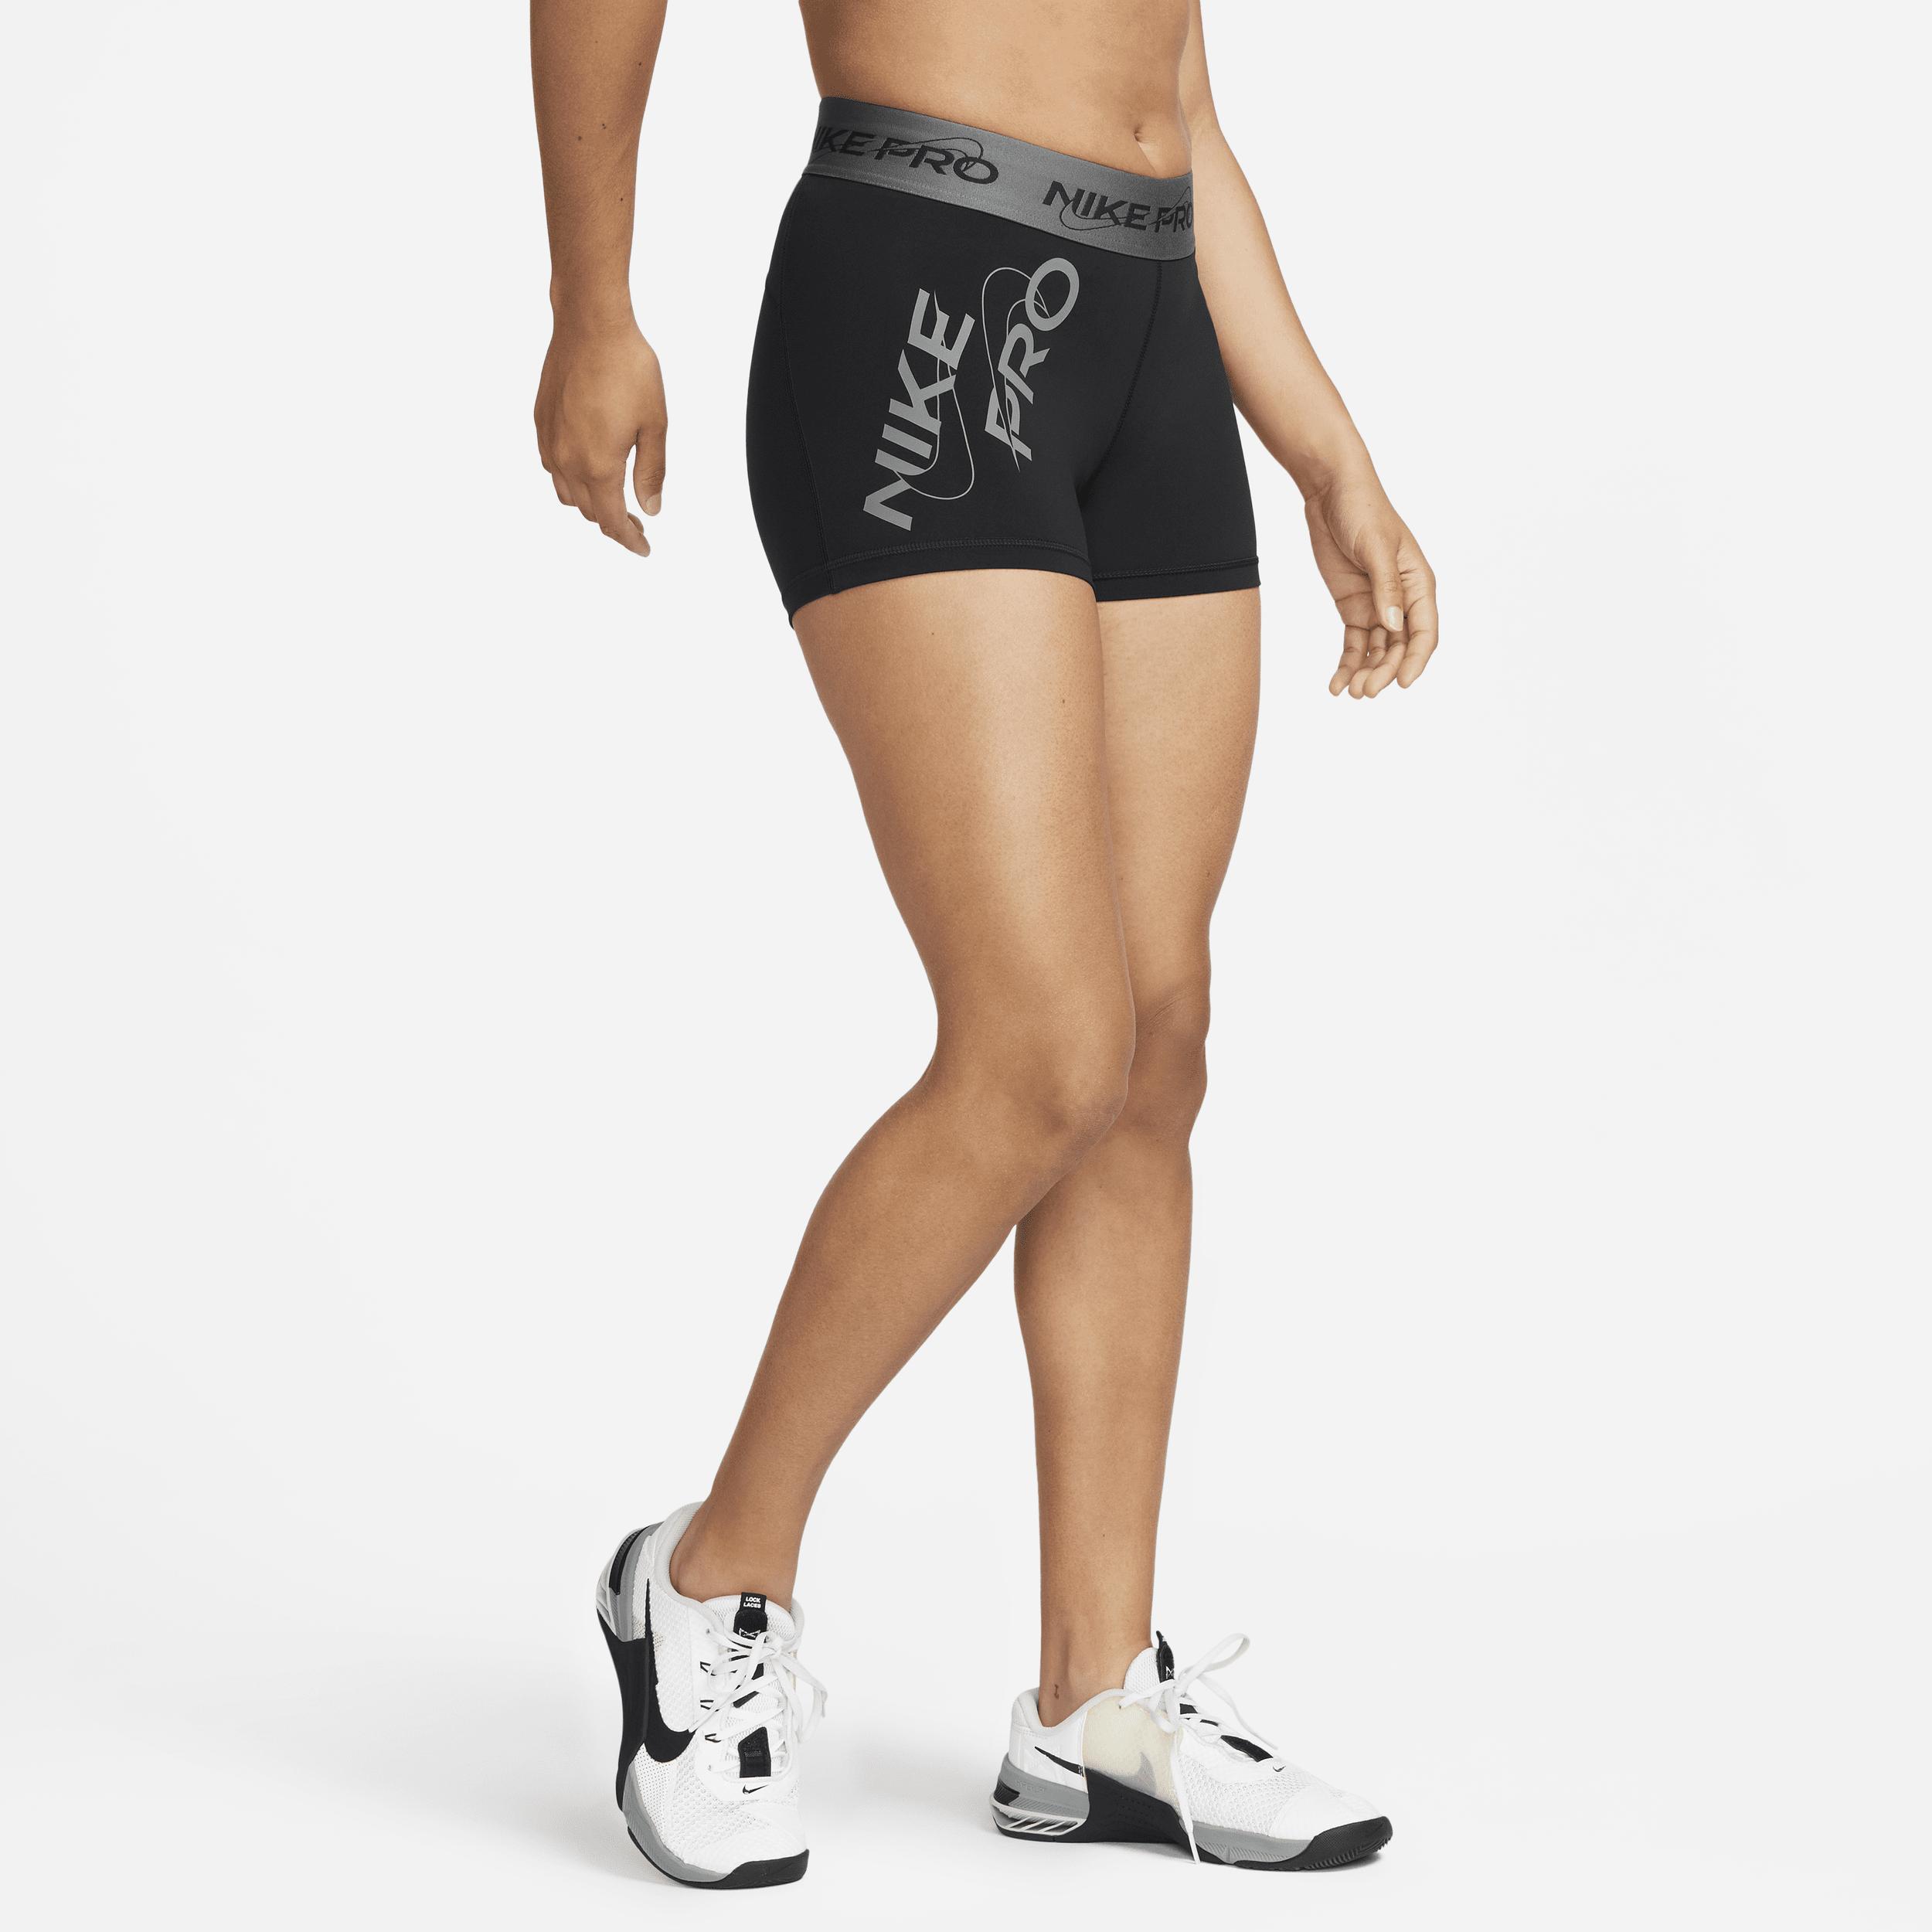 Nike Pro Mid Rise Graphic Training Shorts Product Image